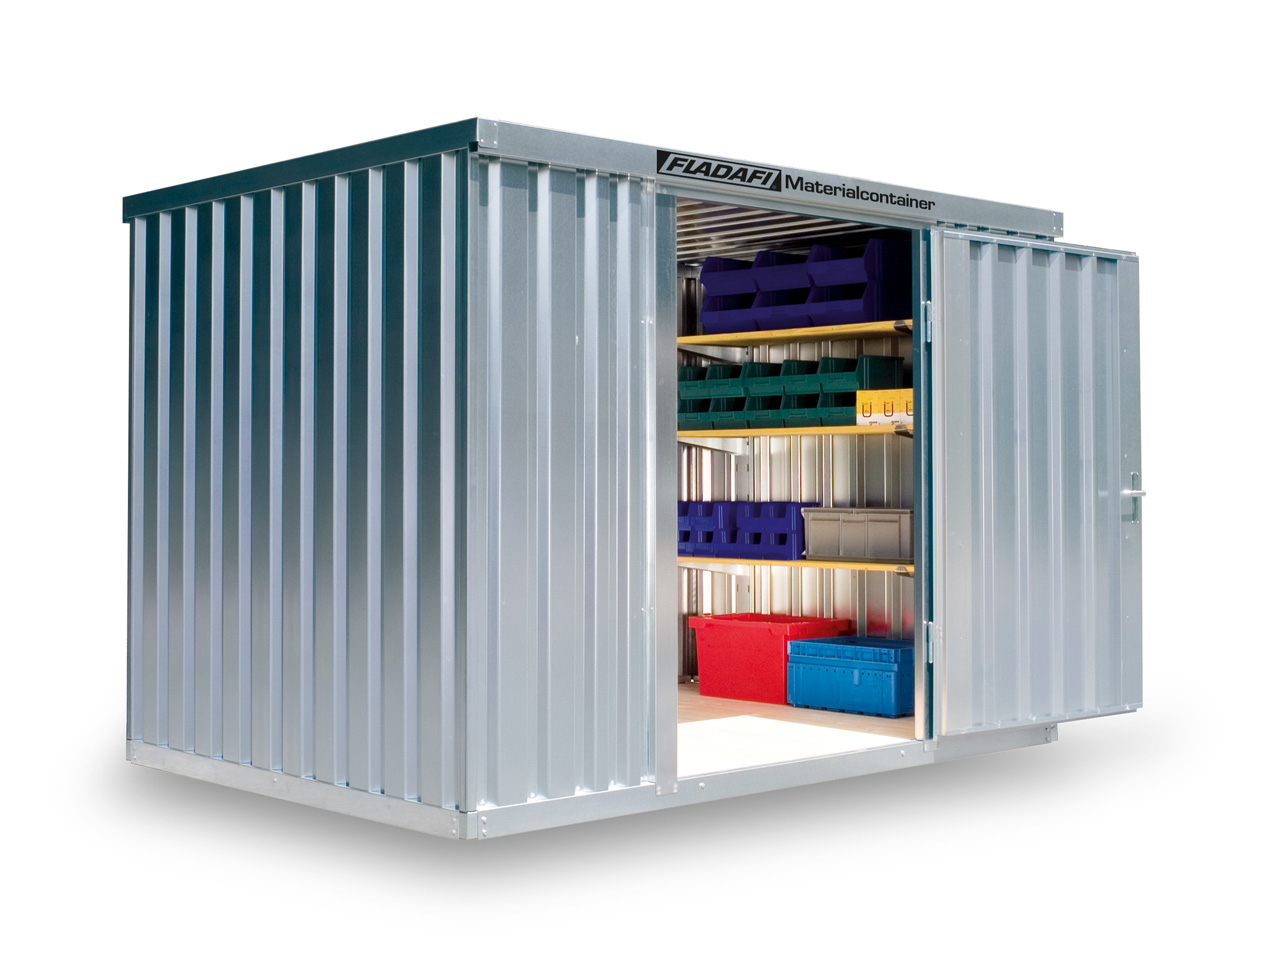 FLADAFI Materialcontainer MC 1300 ✔️ günstig bei HWG-Tec kaufen ✔️ mit Holzboden ✔️